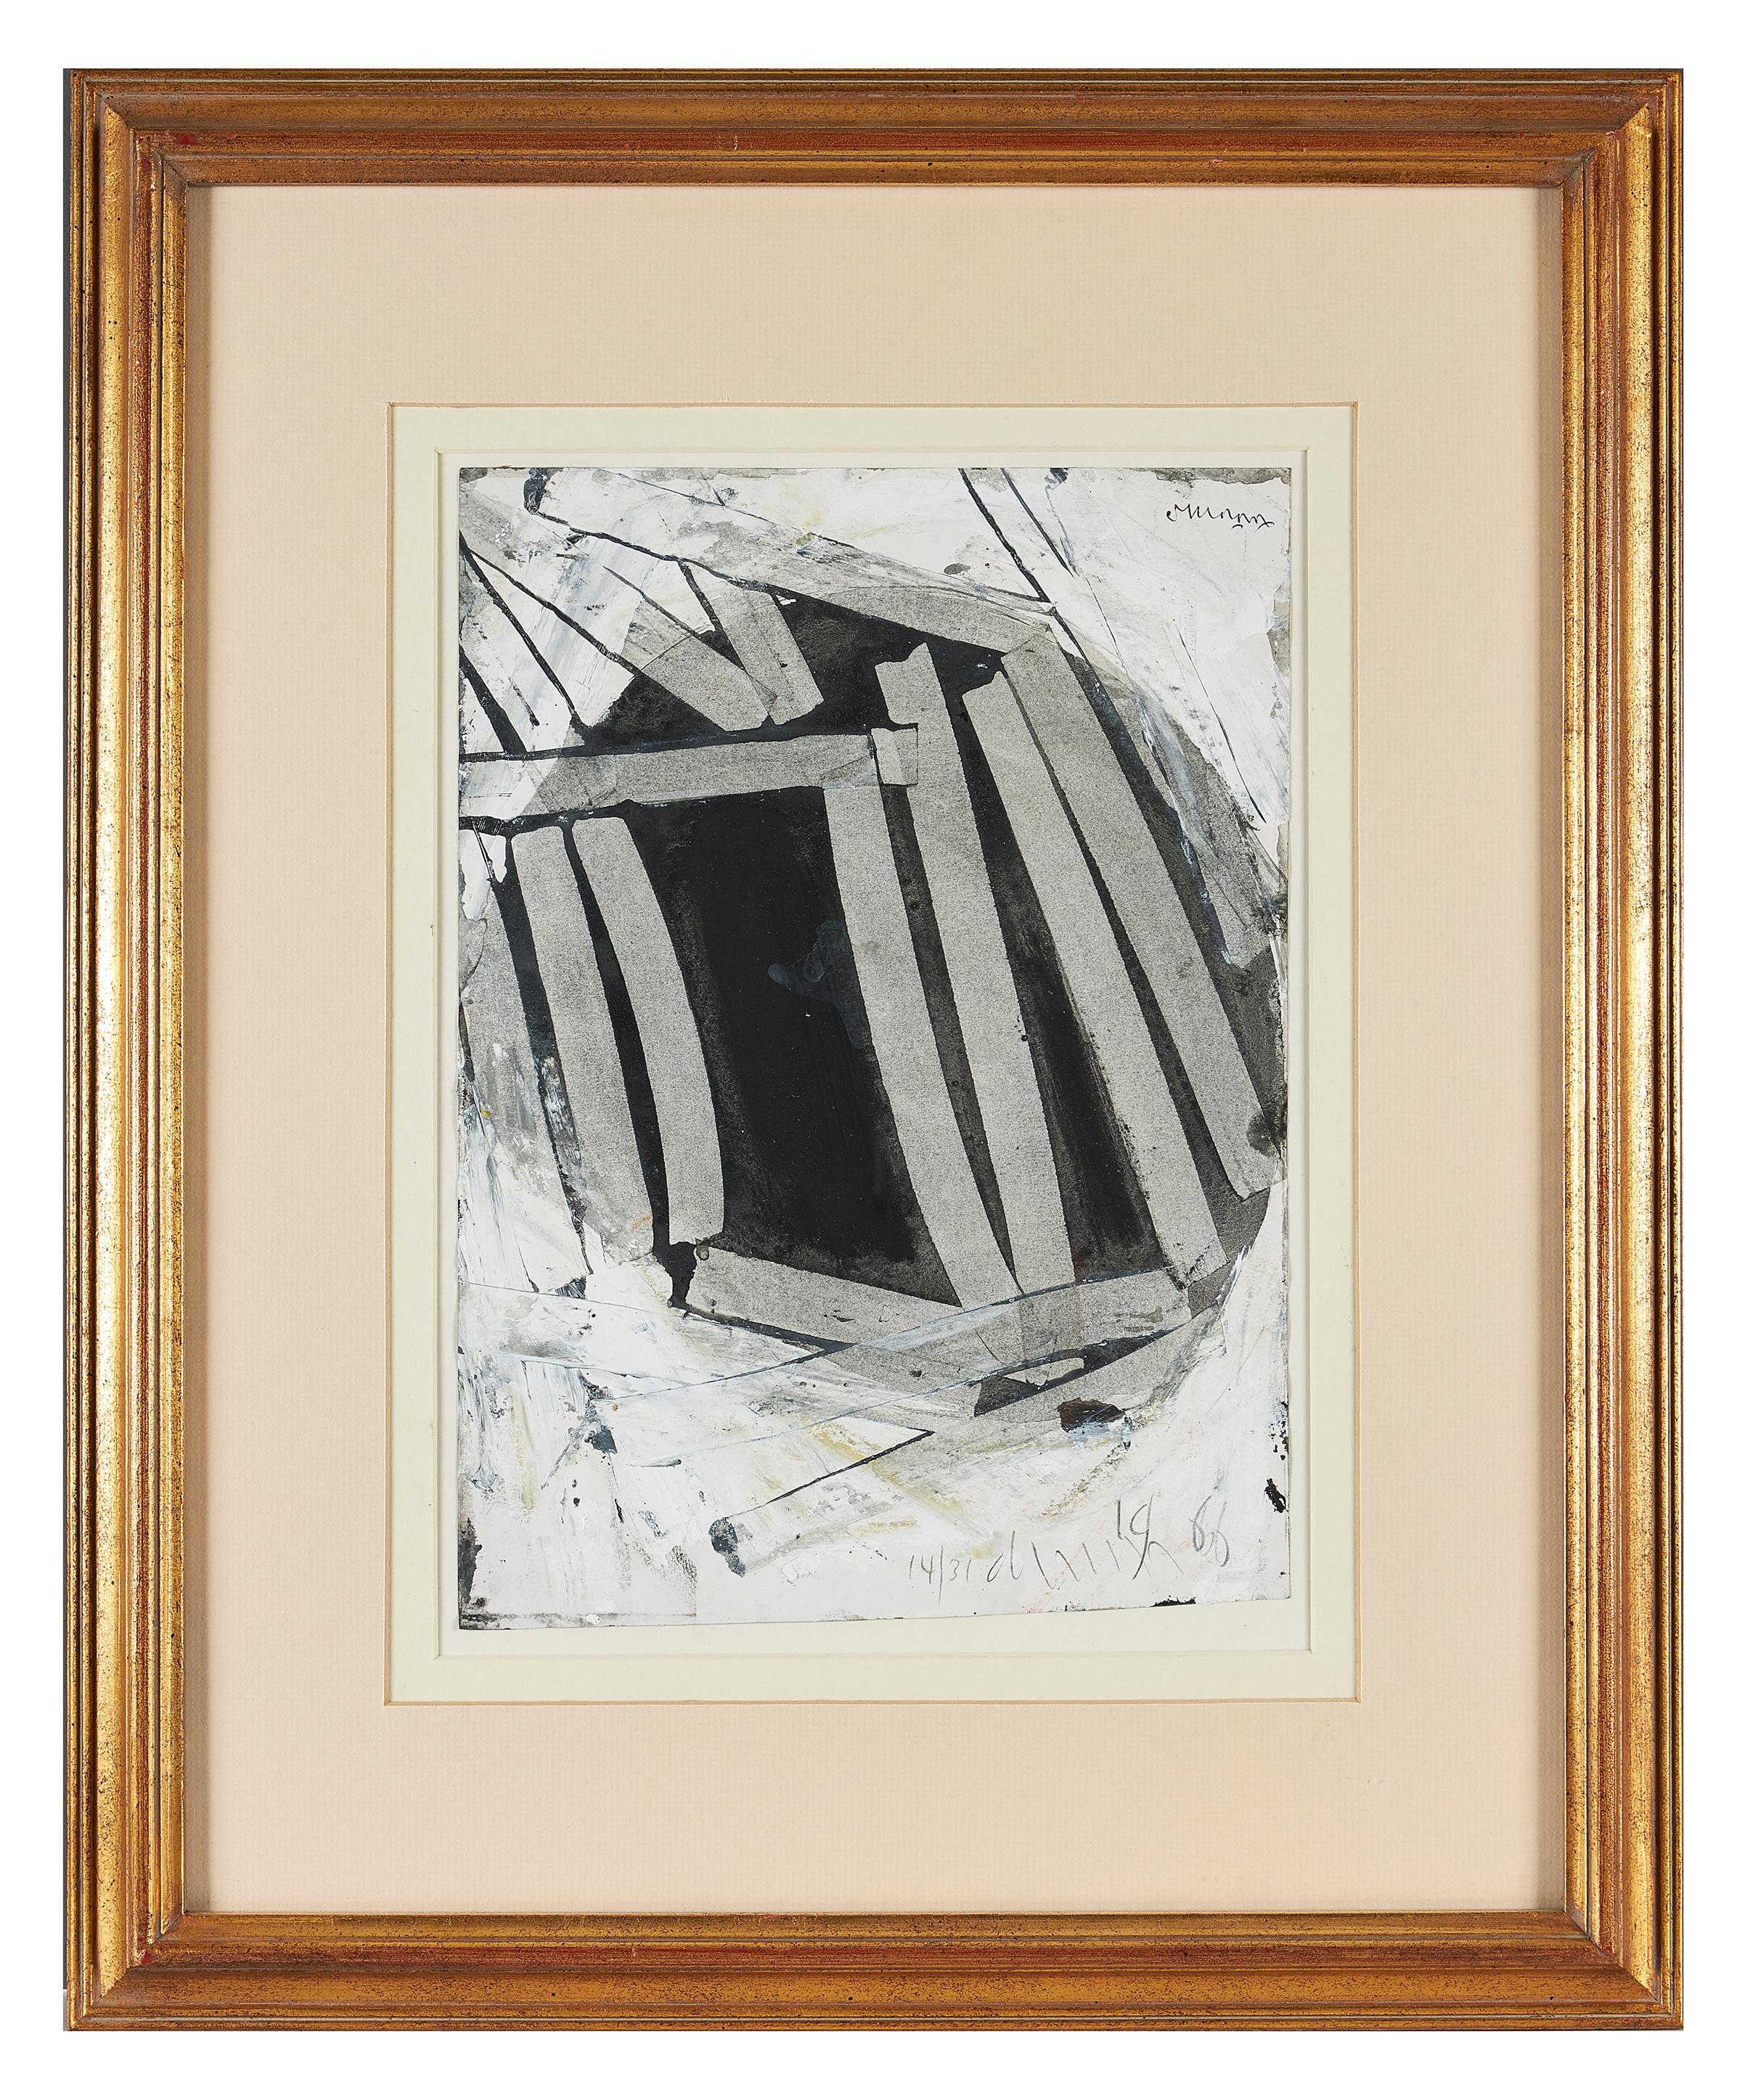 Roy Turner Durrant (britannique, 1925-1998), 'Untitled', lavis gris et noir rehaussé de blanc sur papier, indistinctement inscrit et daté 1966, encadré.